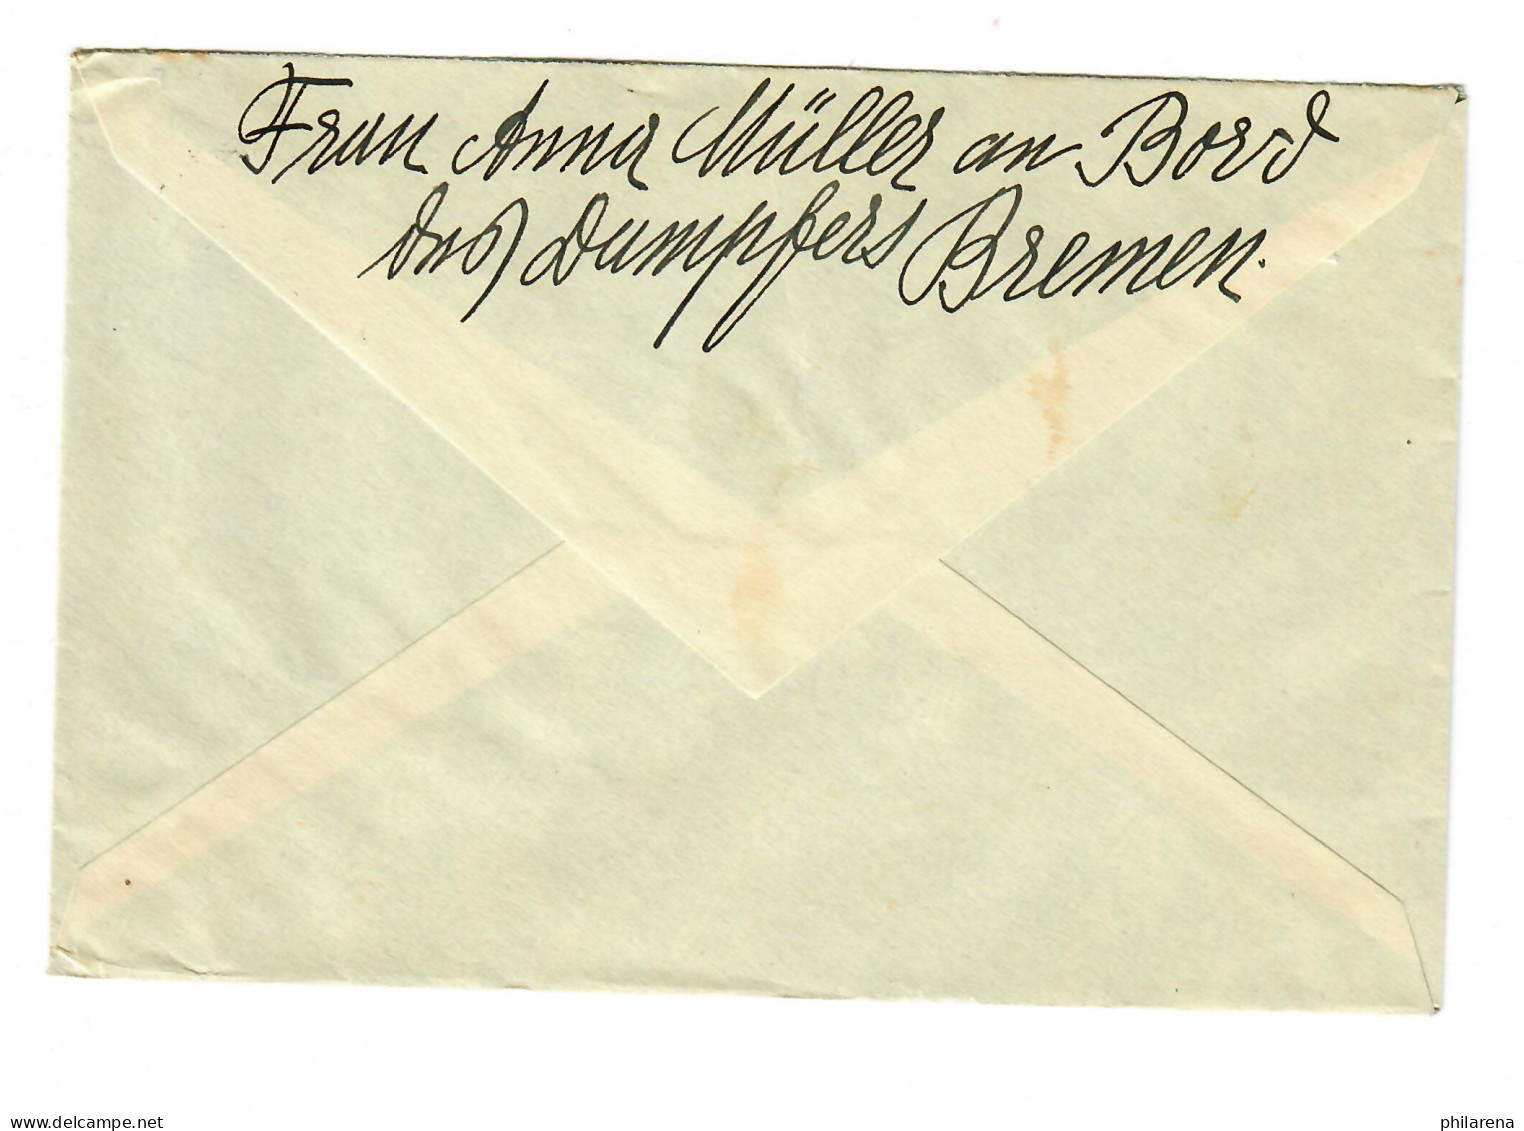 Deutsch-Amerikanische Seepost-New York-Bremen 1934 - Briefe U. Dokumente